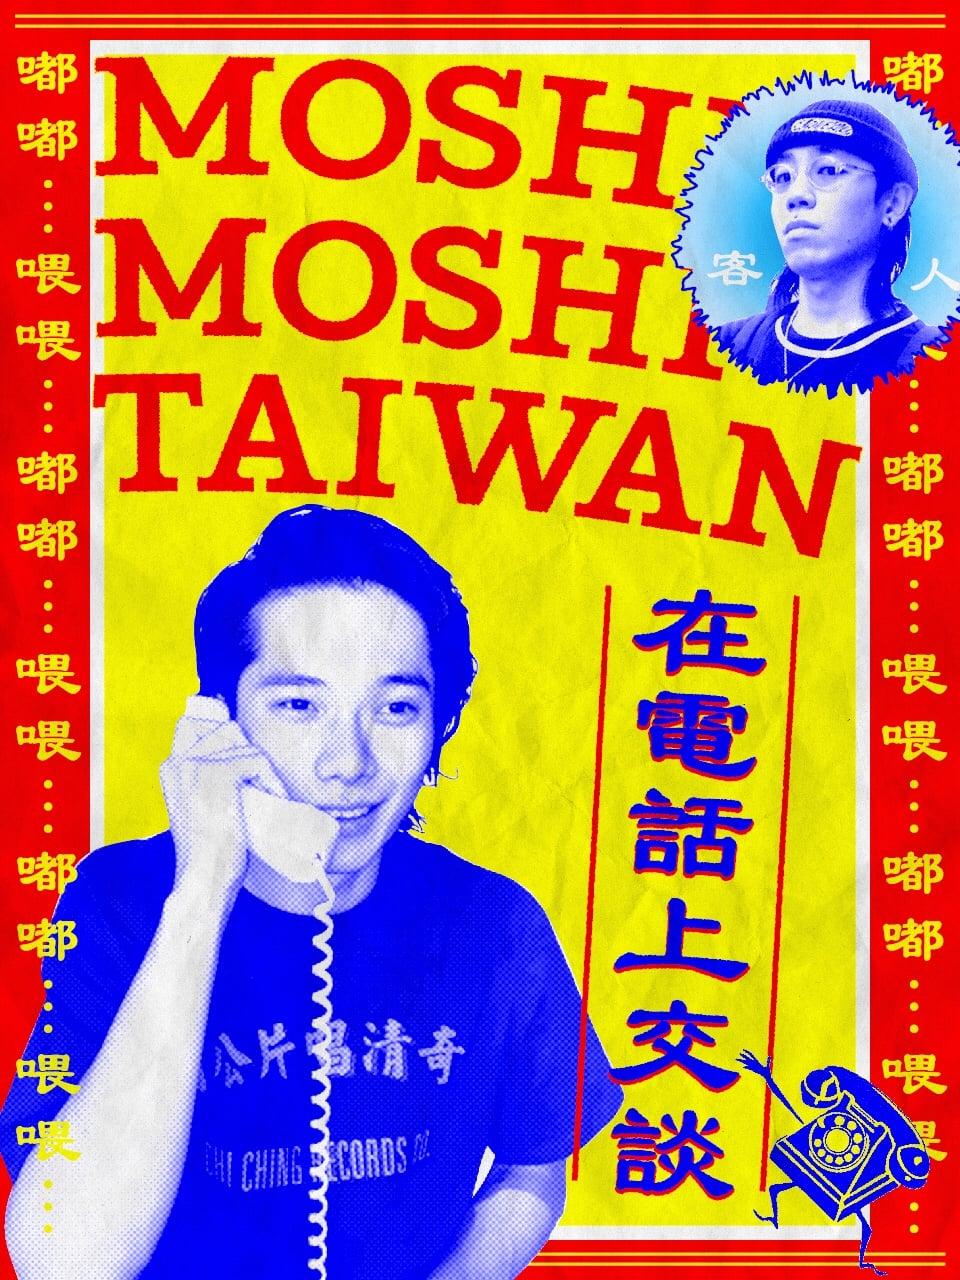 タピオカ飲むなら「50嵐」！電話で台湾文化をナビゲート。翔平のもしもし台湾 vol.1